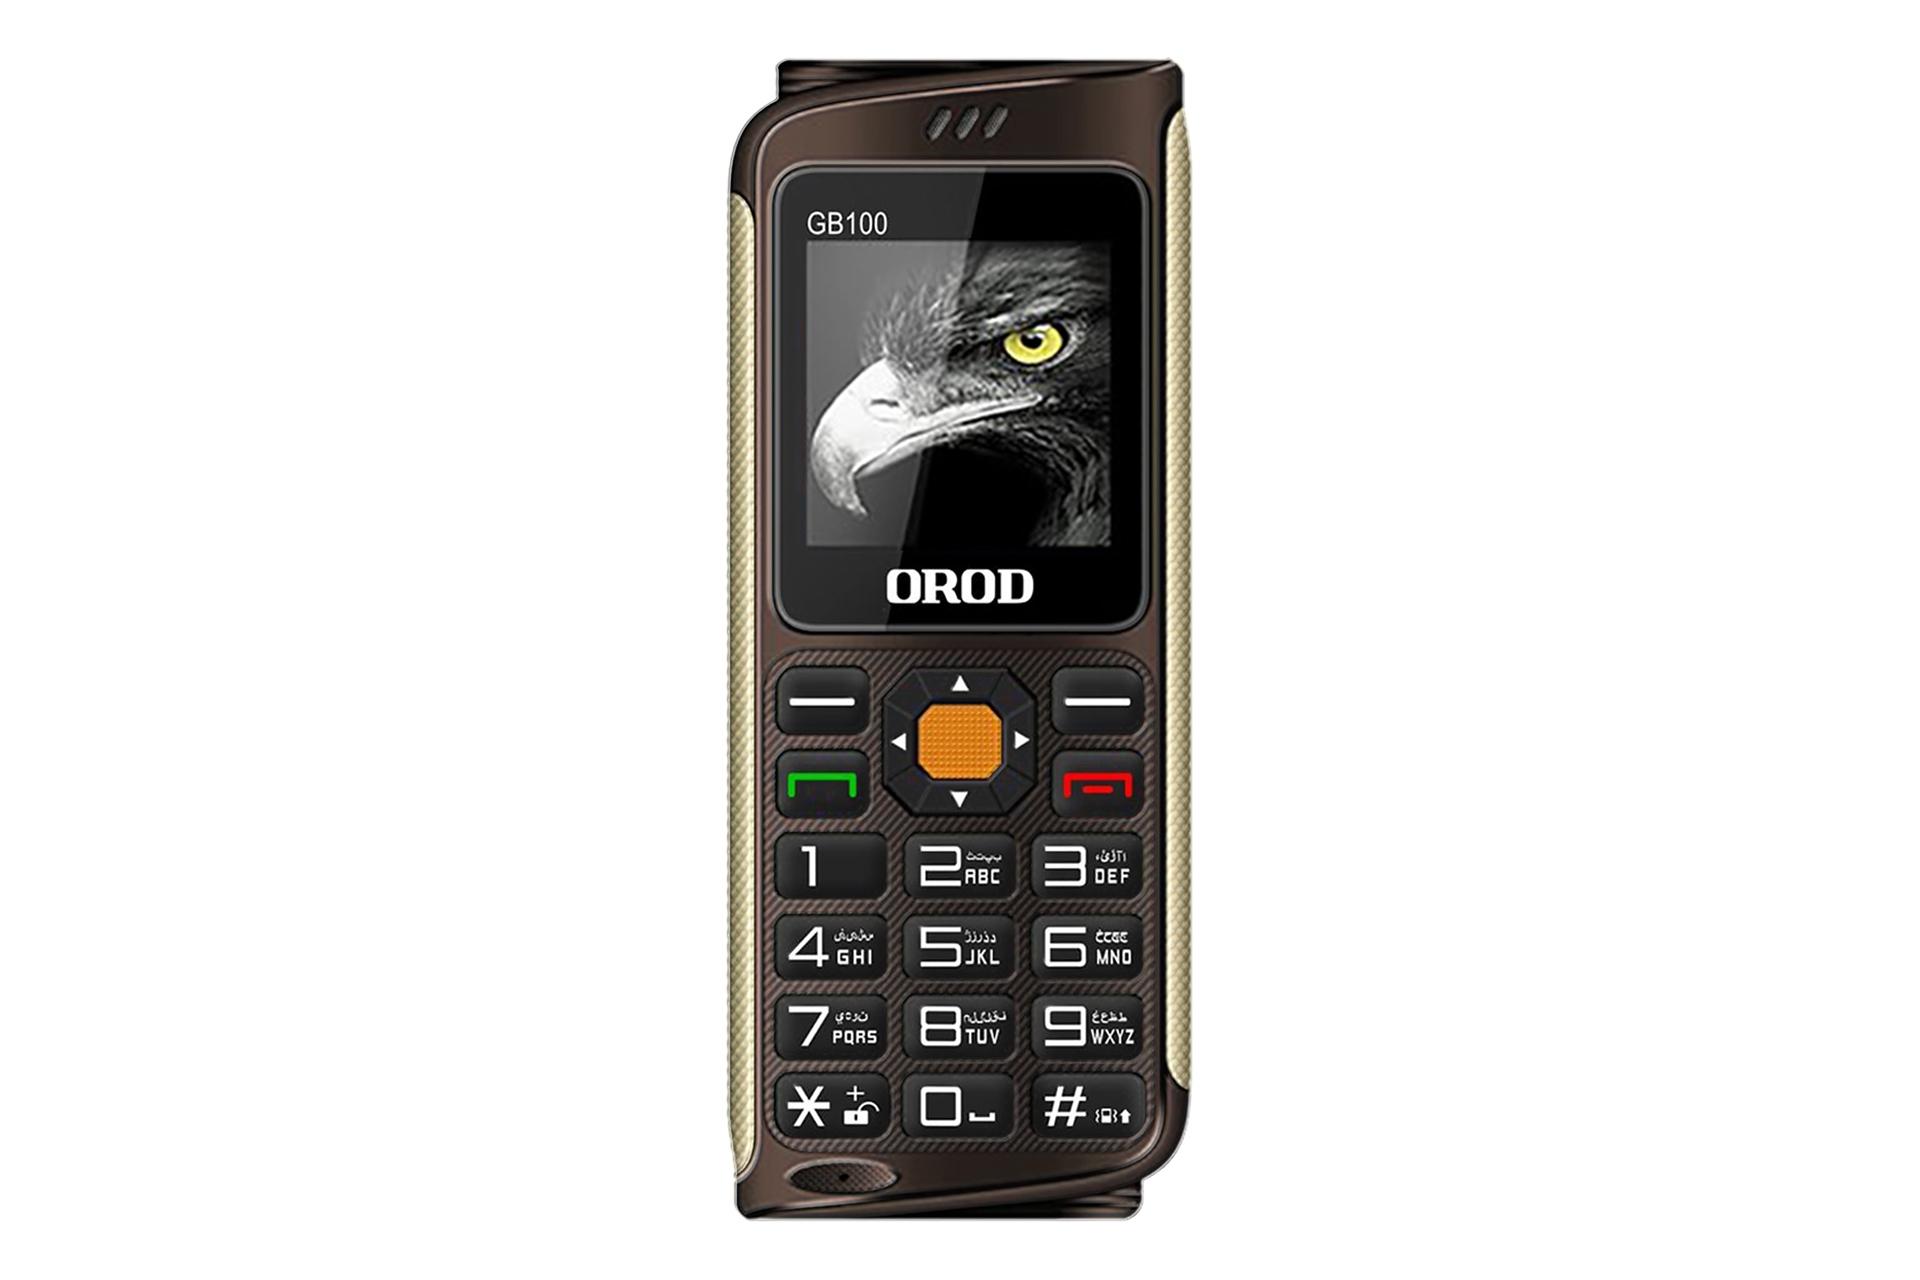 گوشی موبایل جی بی 100 ارد OROD GB100 قهوه ای